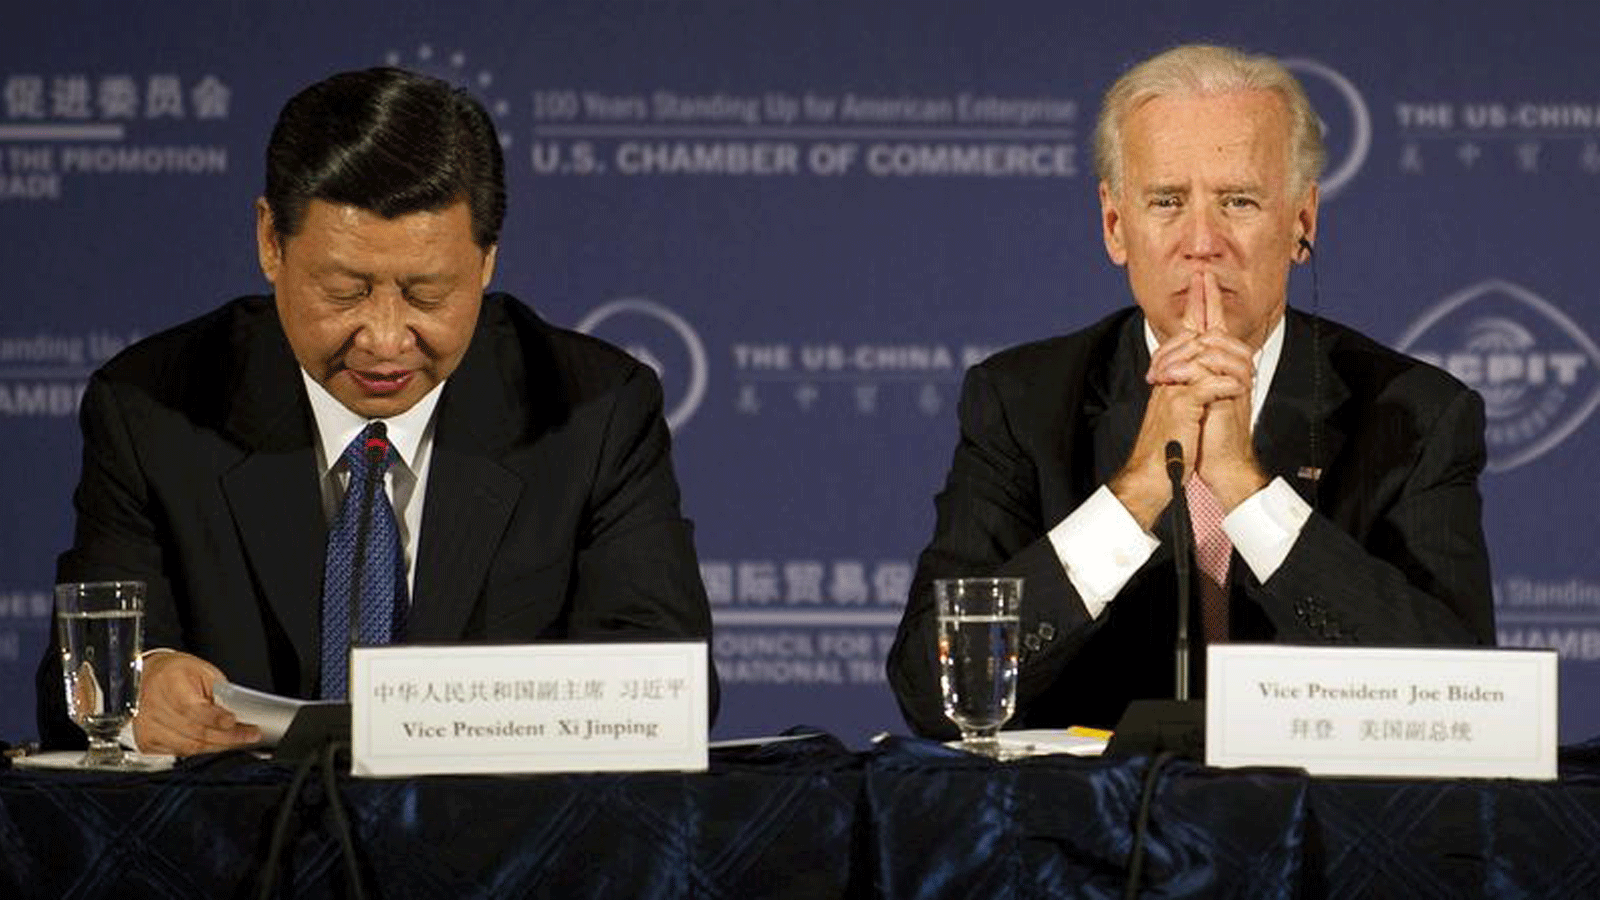 الرئيس الصيني شي جين بينغ (يسار) يتحدث مع الرئيس الأمريكي جو بايدن (يمين) حين كان كلٍ منهما نائباً لرئيس بلاده. خلال مائدة مستديرة للأعمال في غرفة التجارة الأميركية في واشنطن العاصمة. 14 شباط/ فبراير 2012